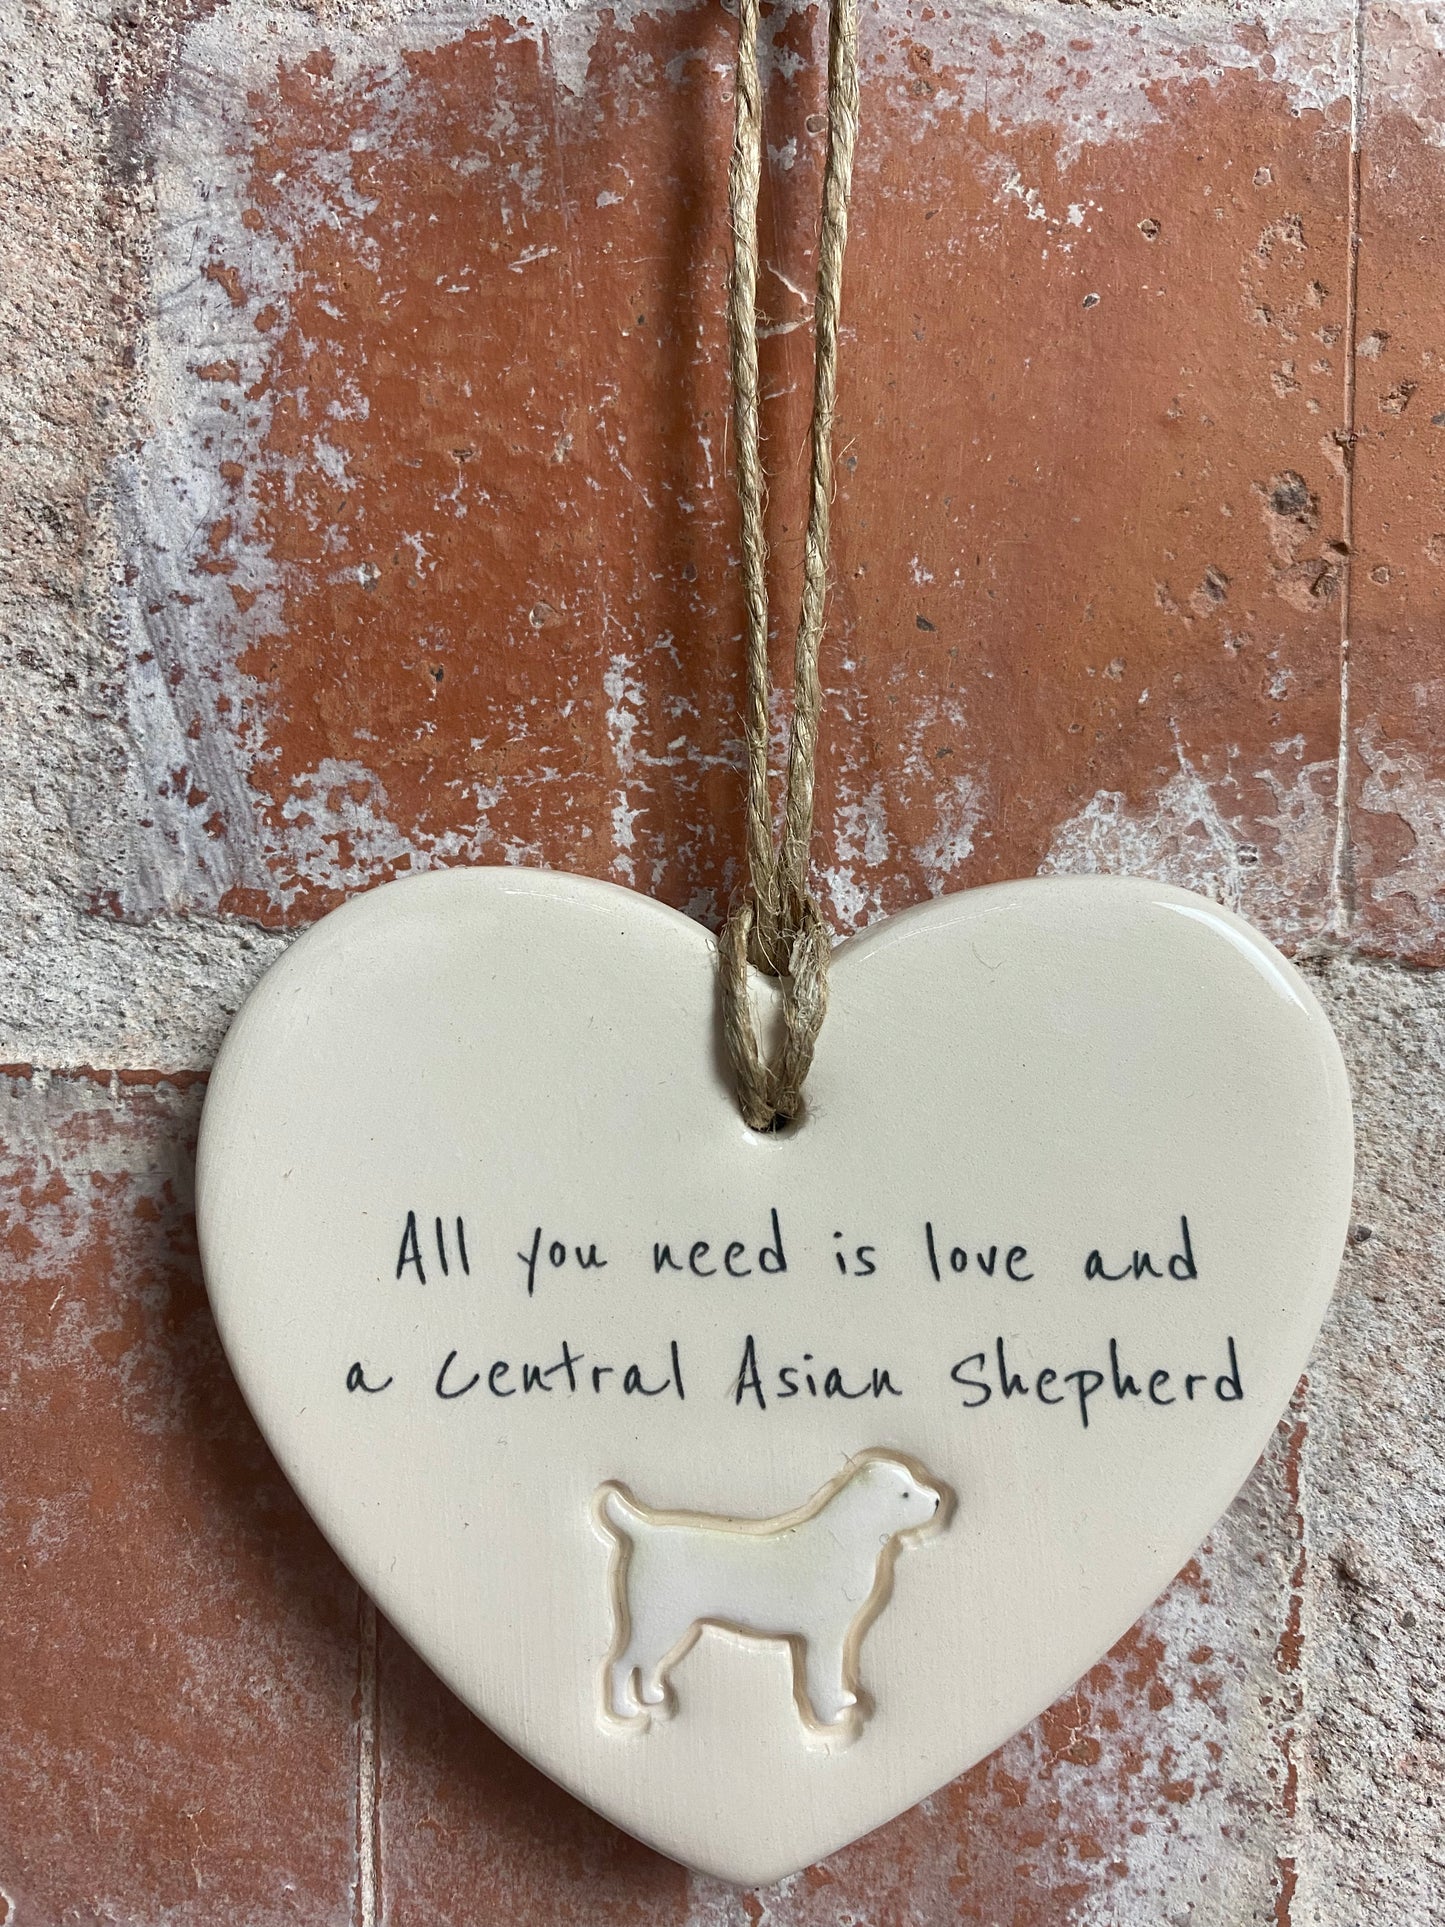 Central Asian Shepherd ceramic heart